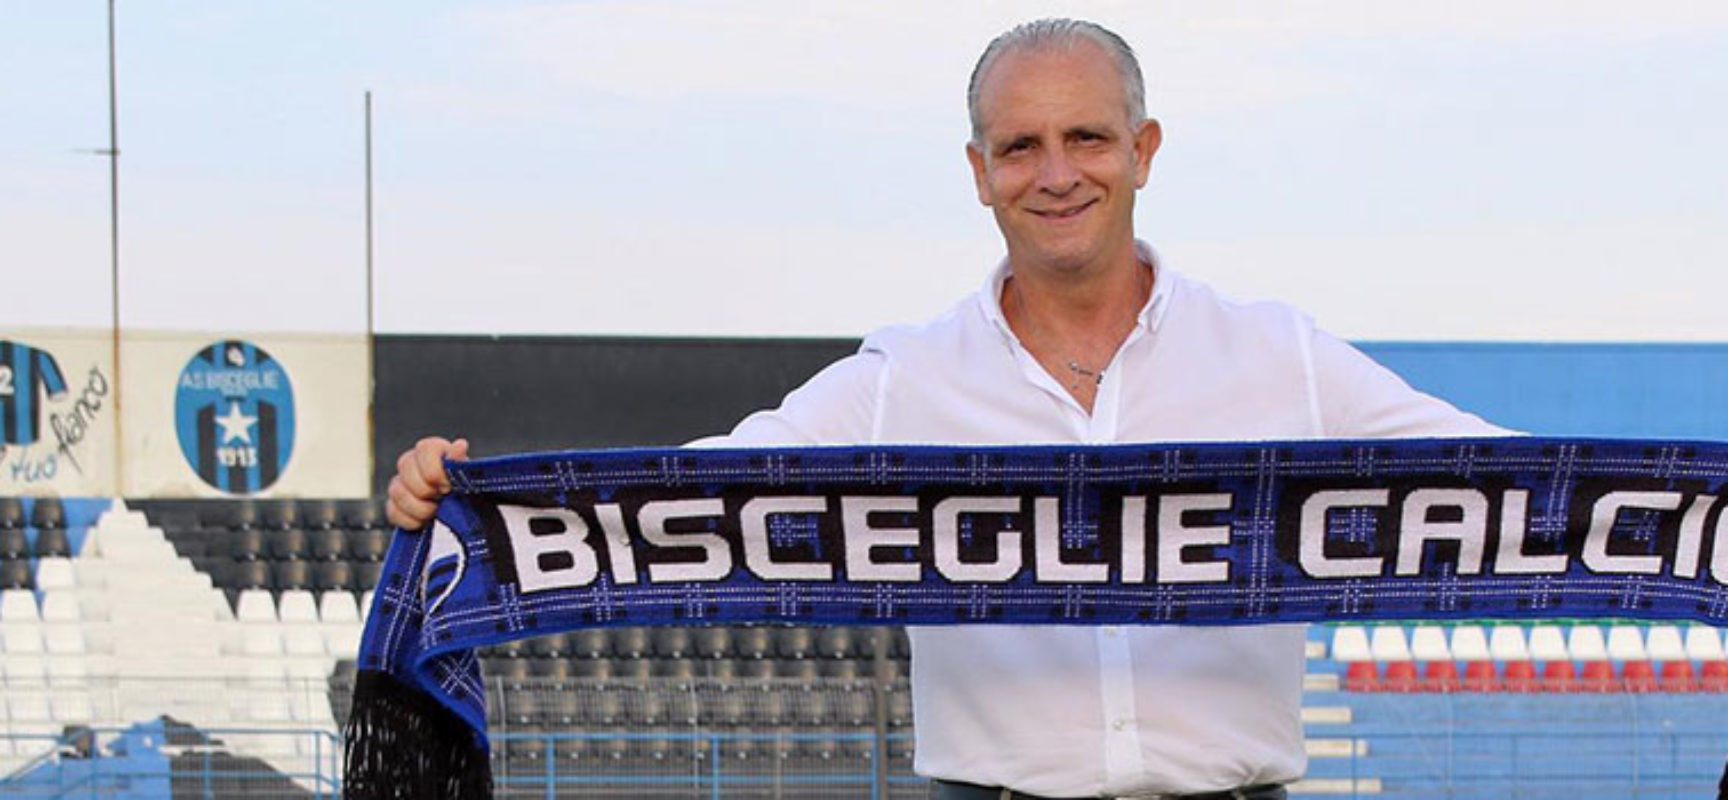 Sergio La Cava è il nuovo tecnico del Bisceglie Calcio